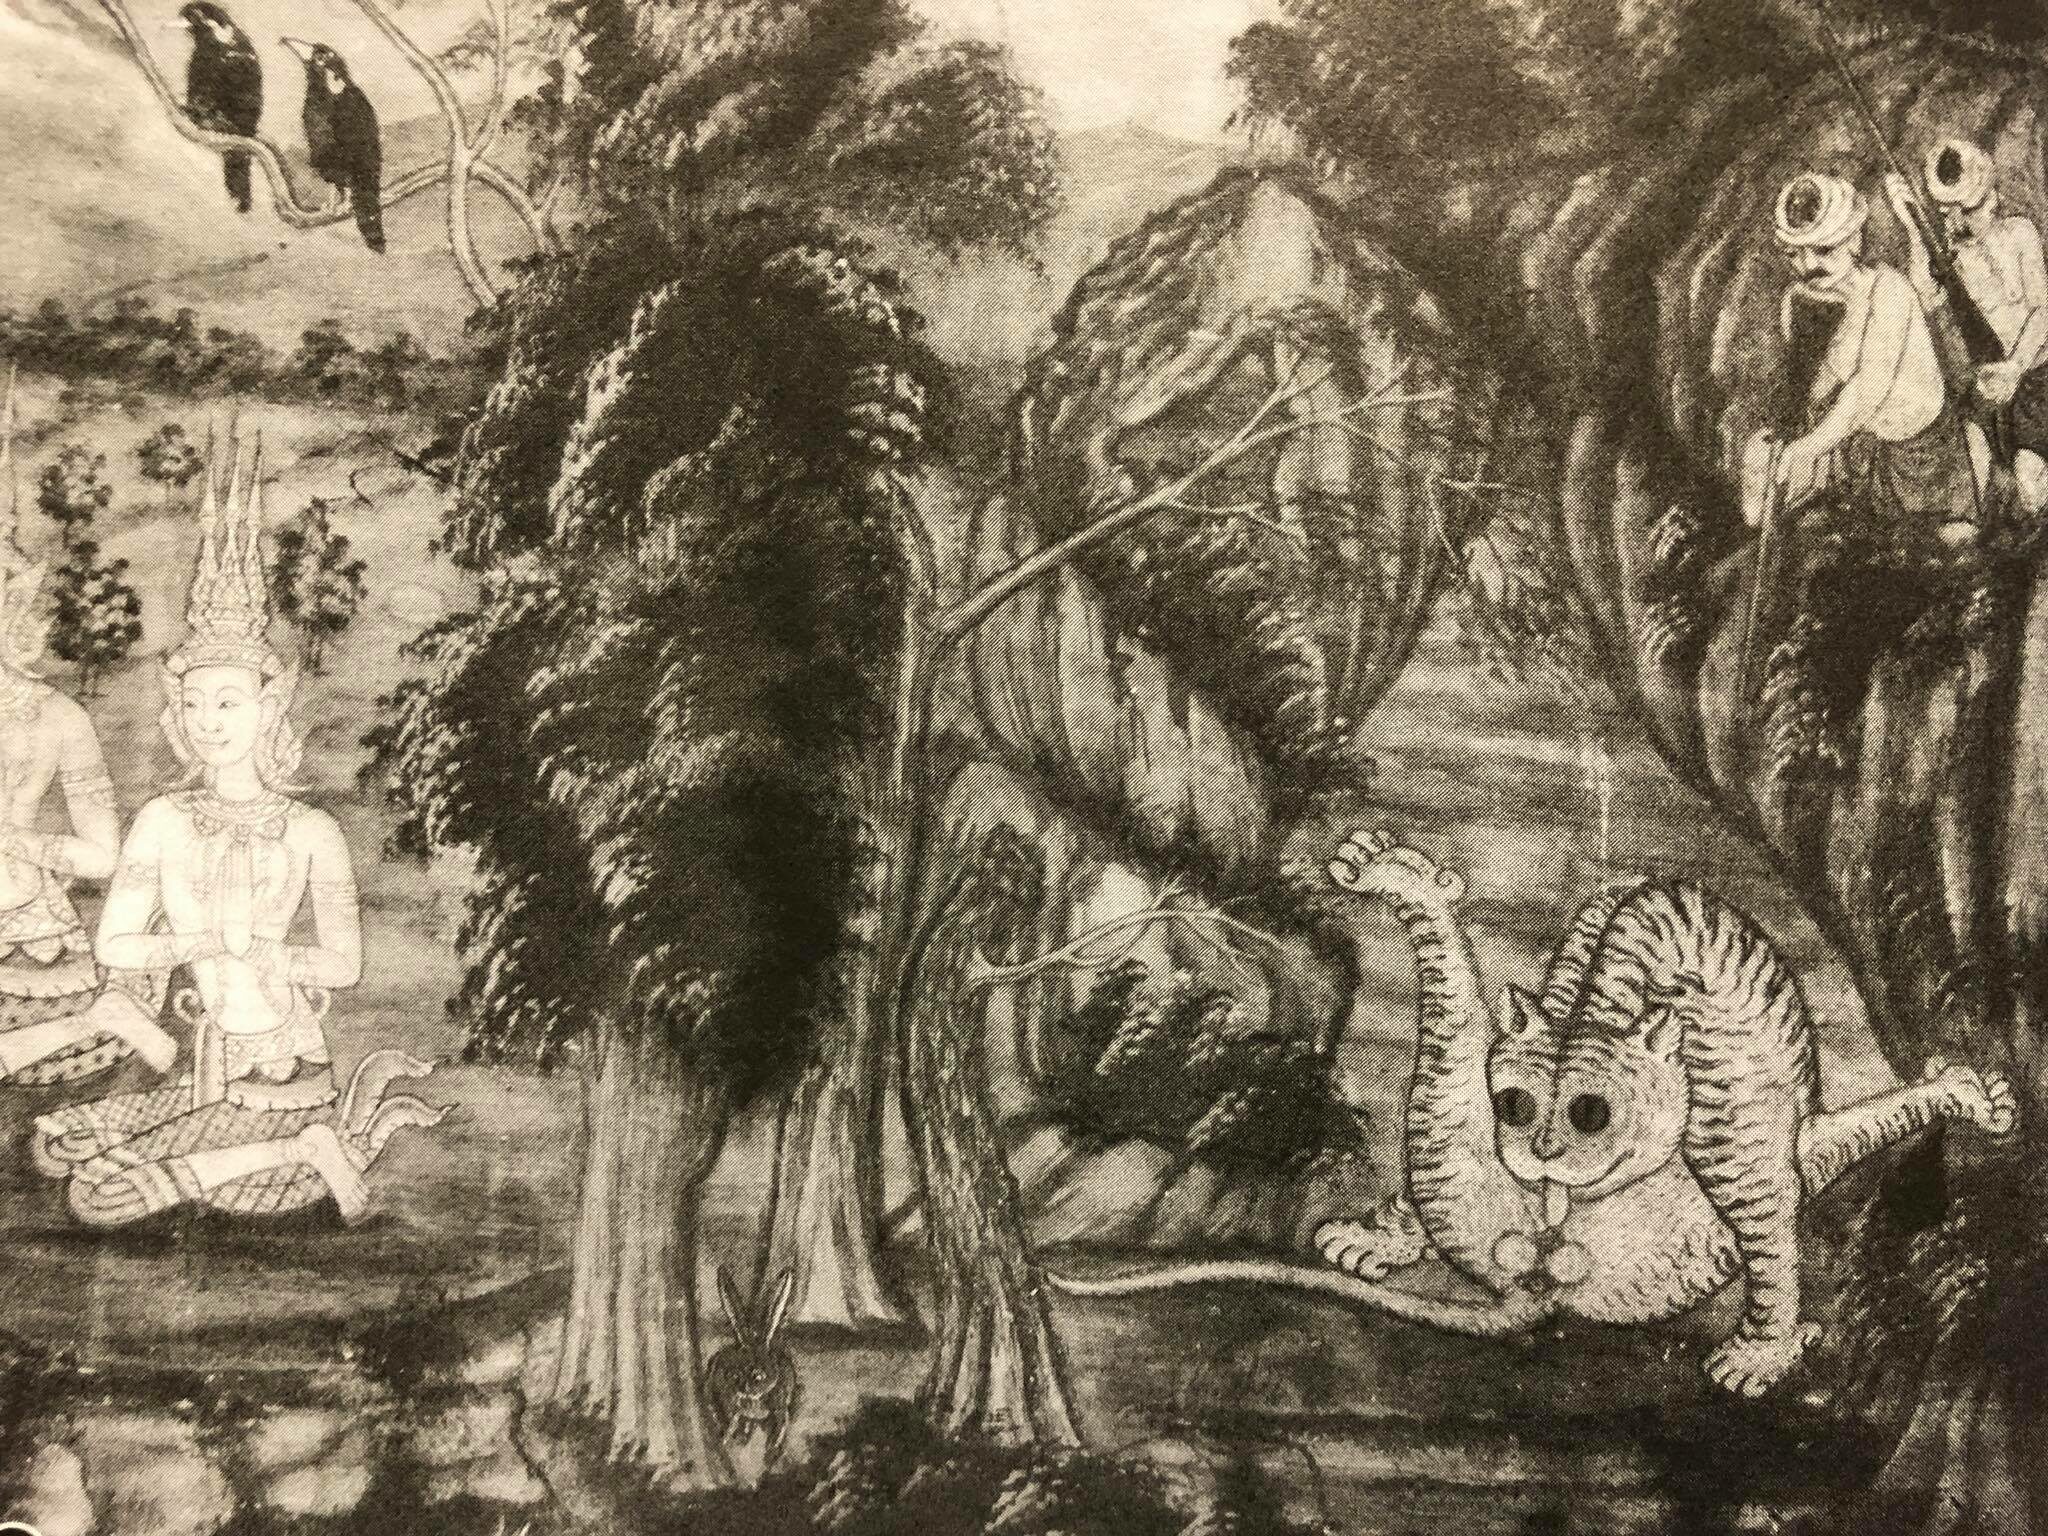 เสือ จิตรกรรม ศาลาการเปรียญ วัดจันทราวาส เพชรบุรี